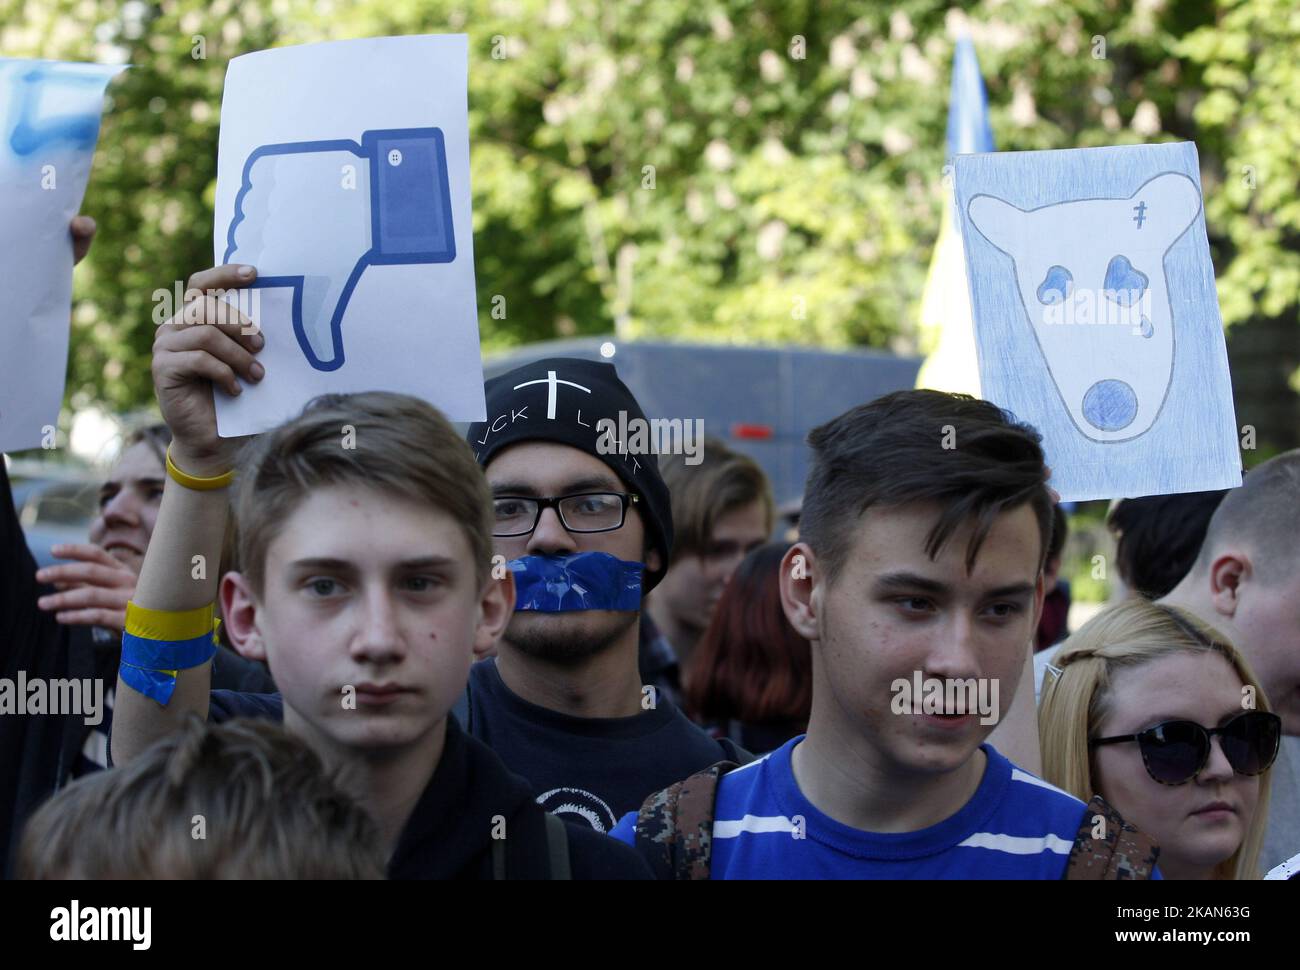 Society vk. Протестующие за мир в Украине. Соседи молодежь. Запрет протестов.